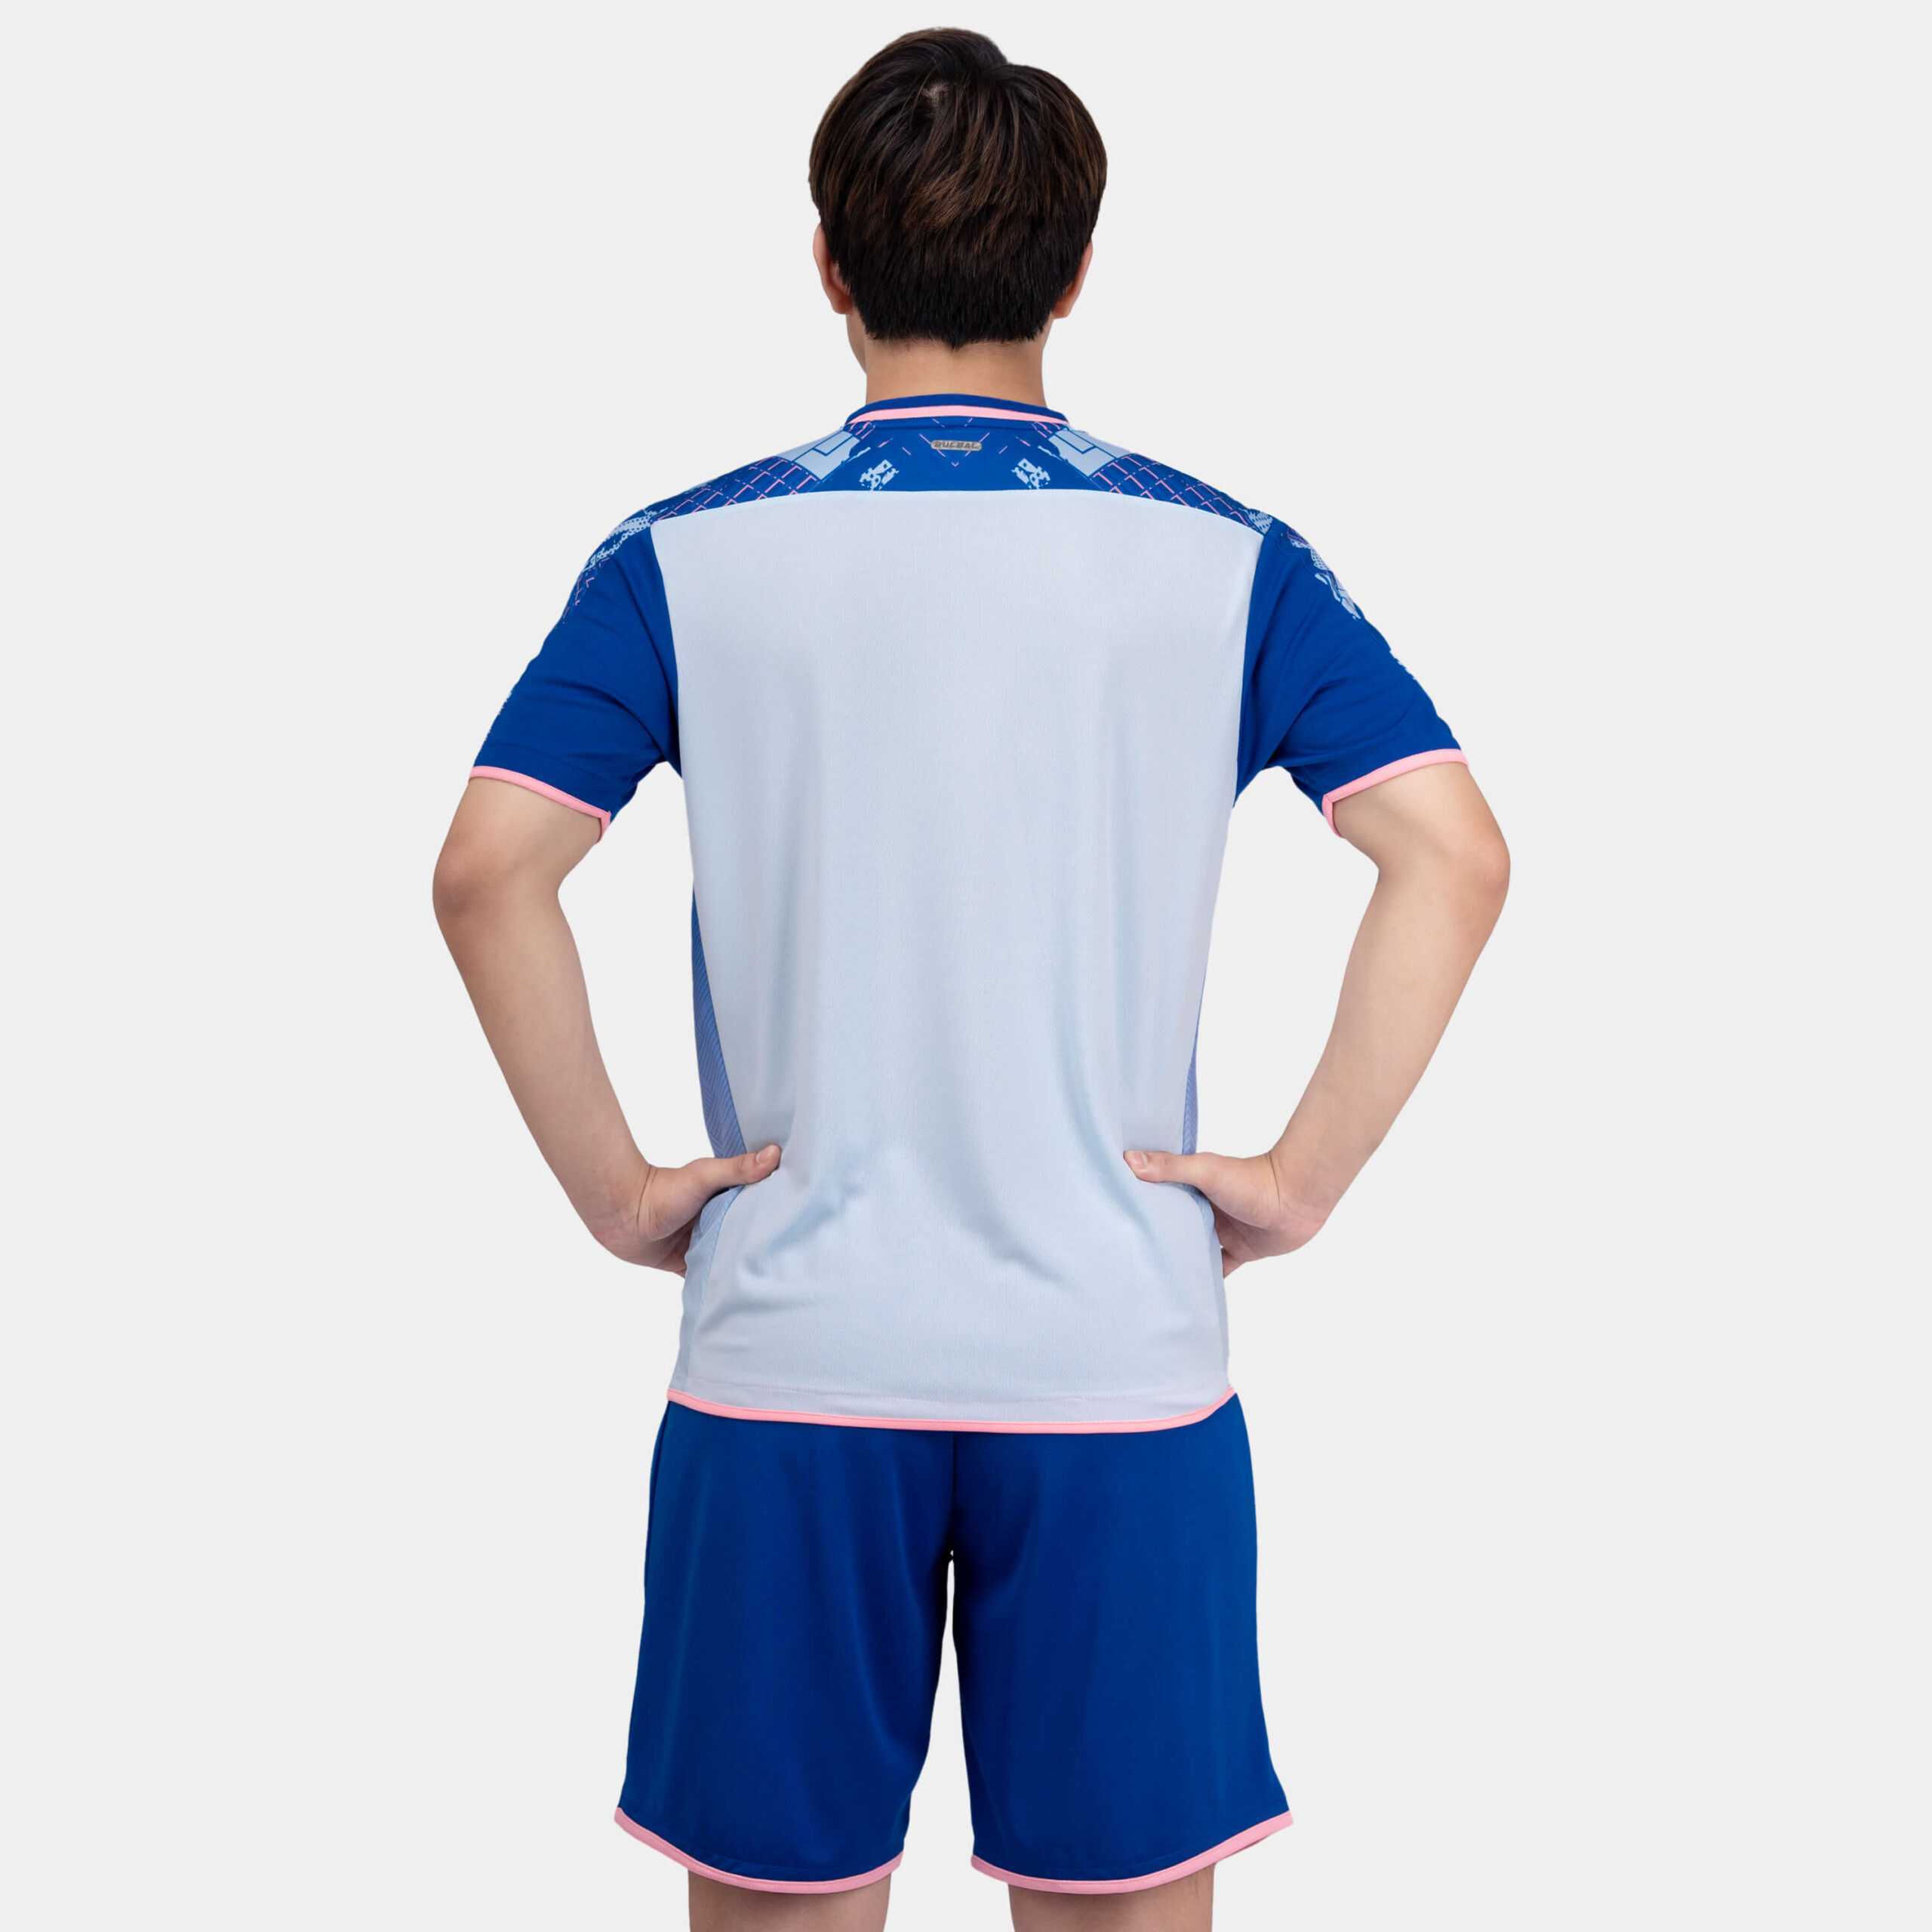 Bộ quần áo bóng đá phủi thiết kế Olas 2 chính hãng Bulbal vải dệt kim mè nhiều màu xanh navy 8